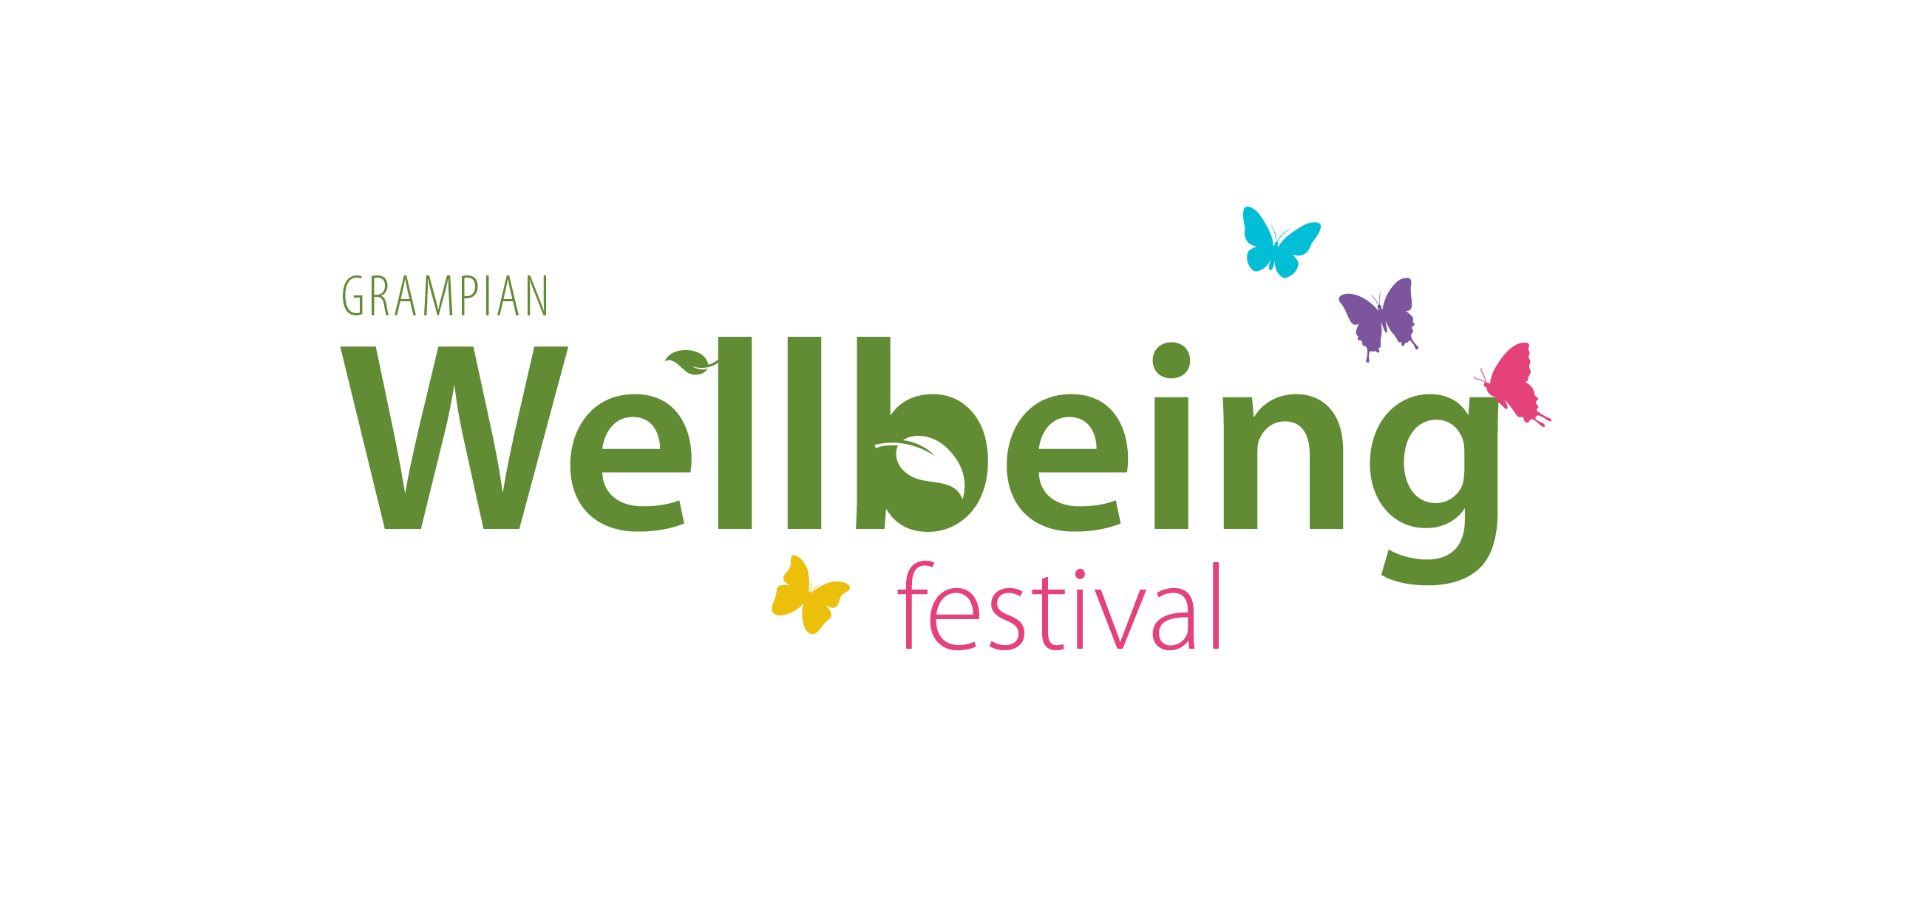 Grampian Wellbeing Festival